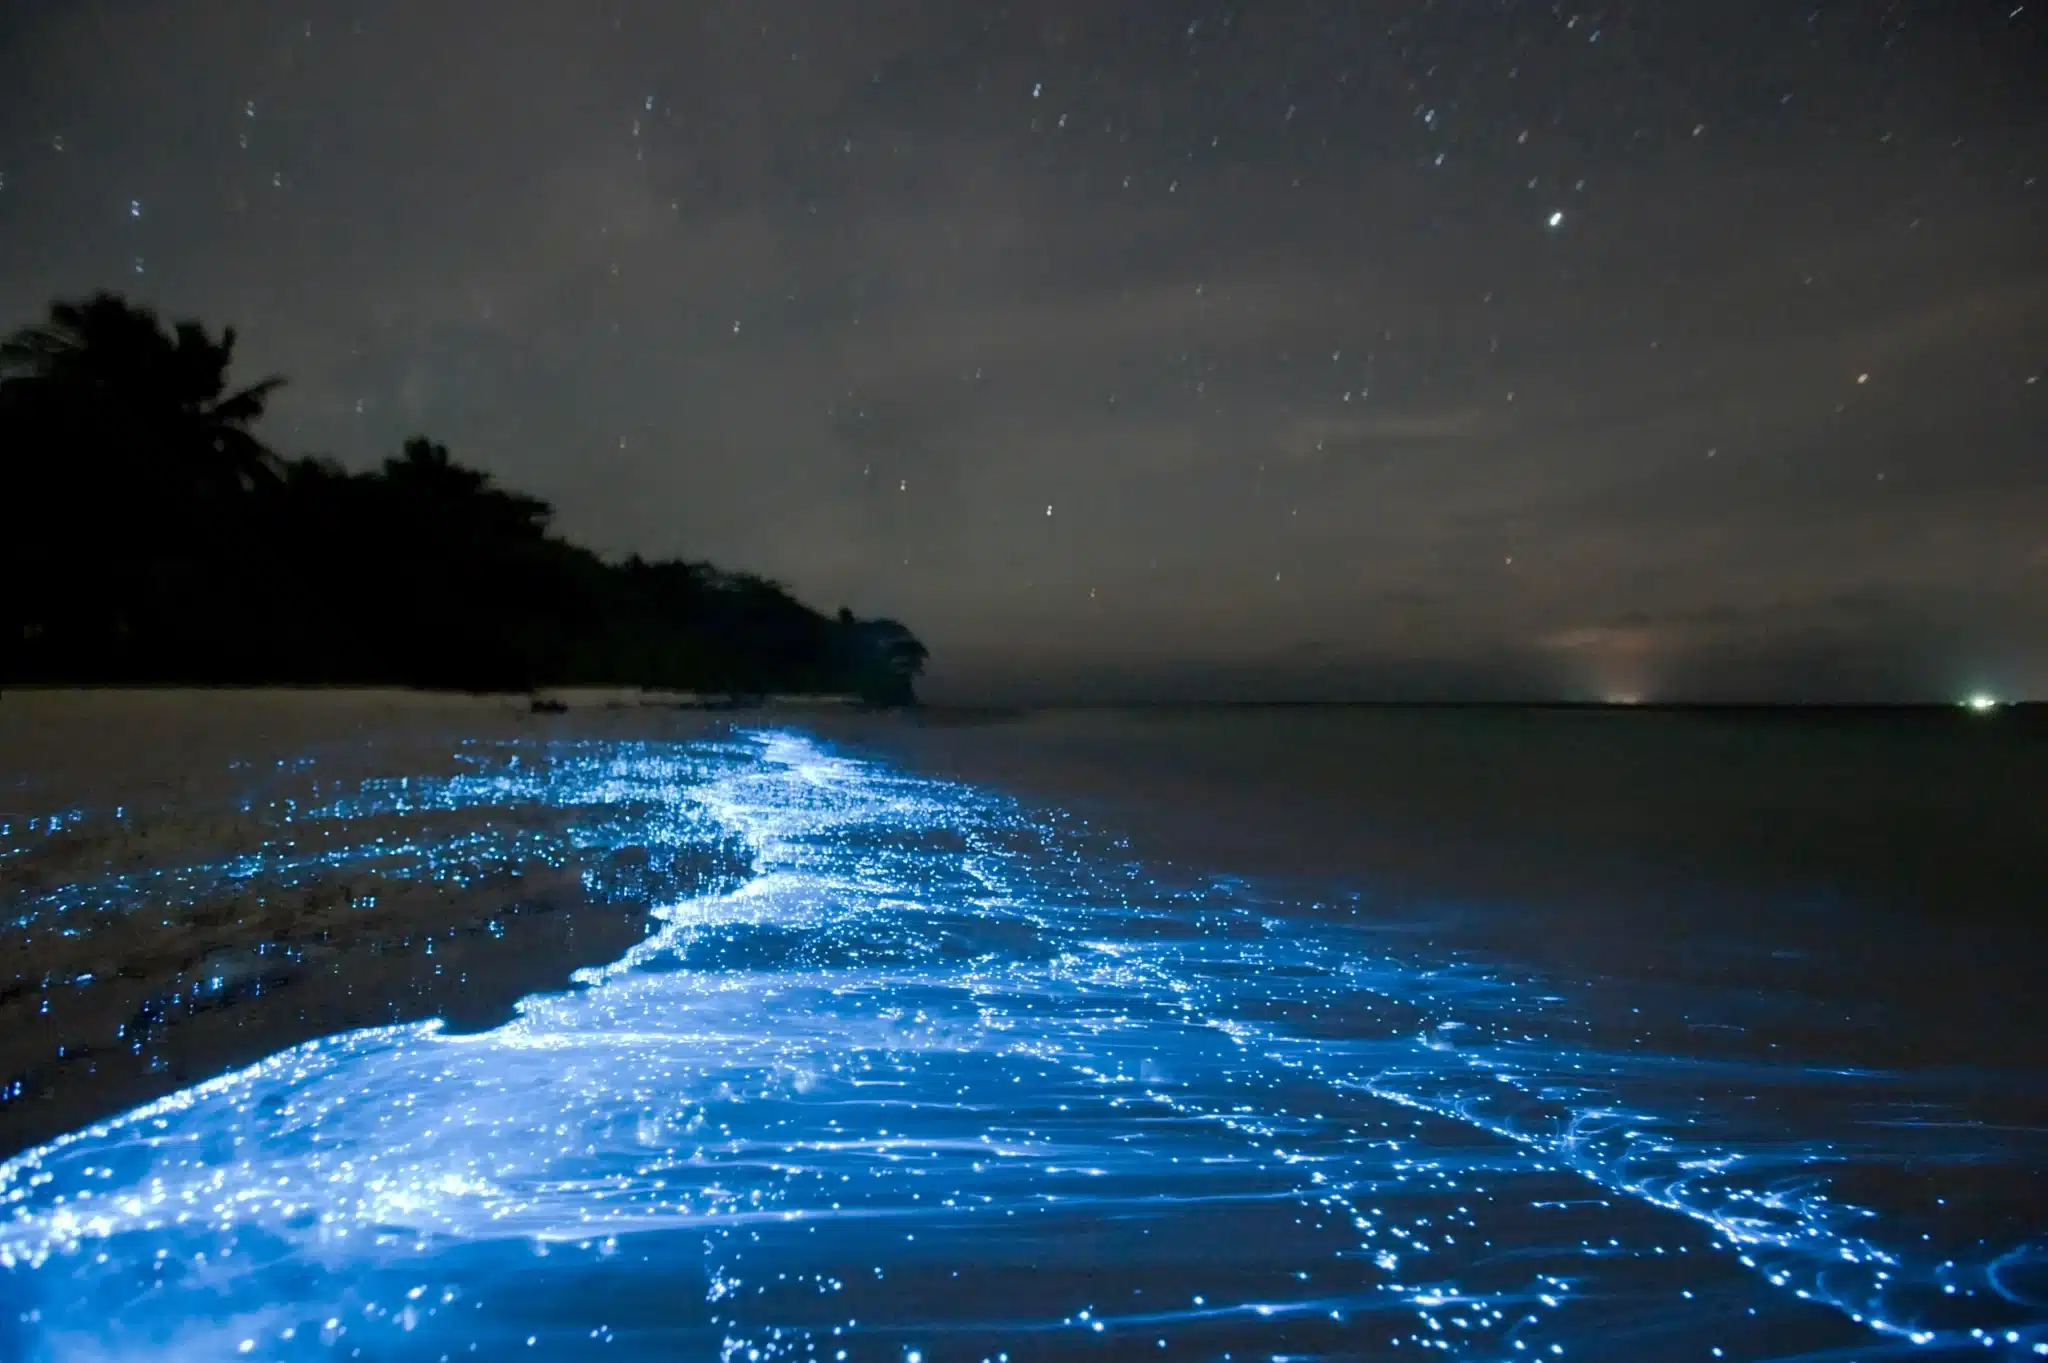  How many of the world’s bays have bioluminescence